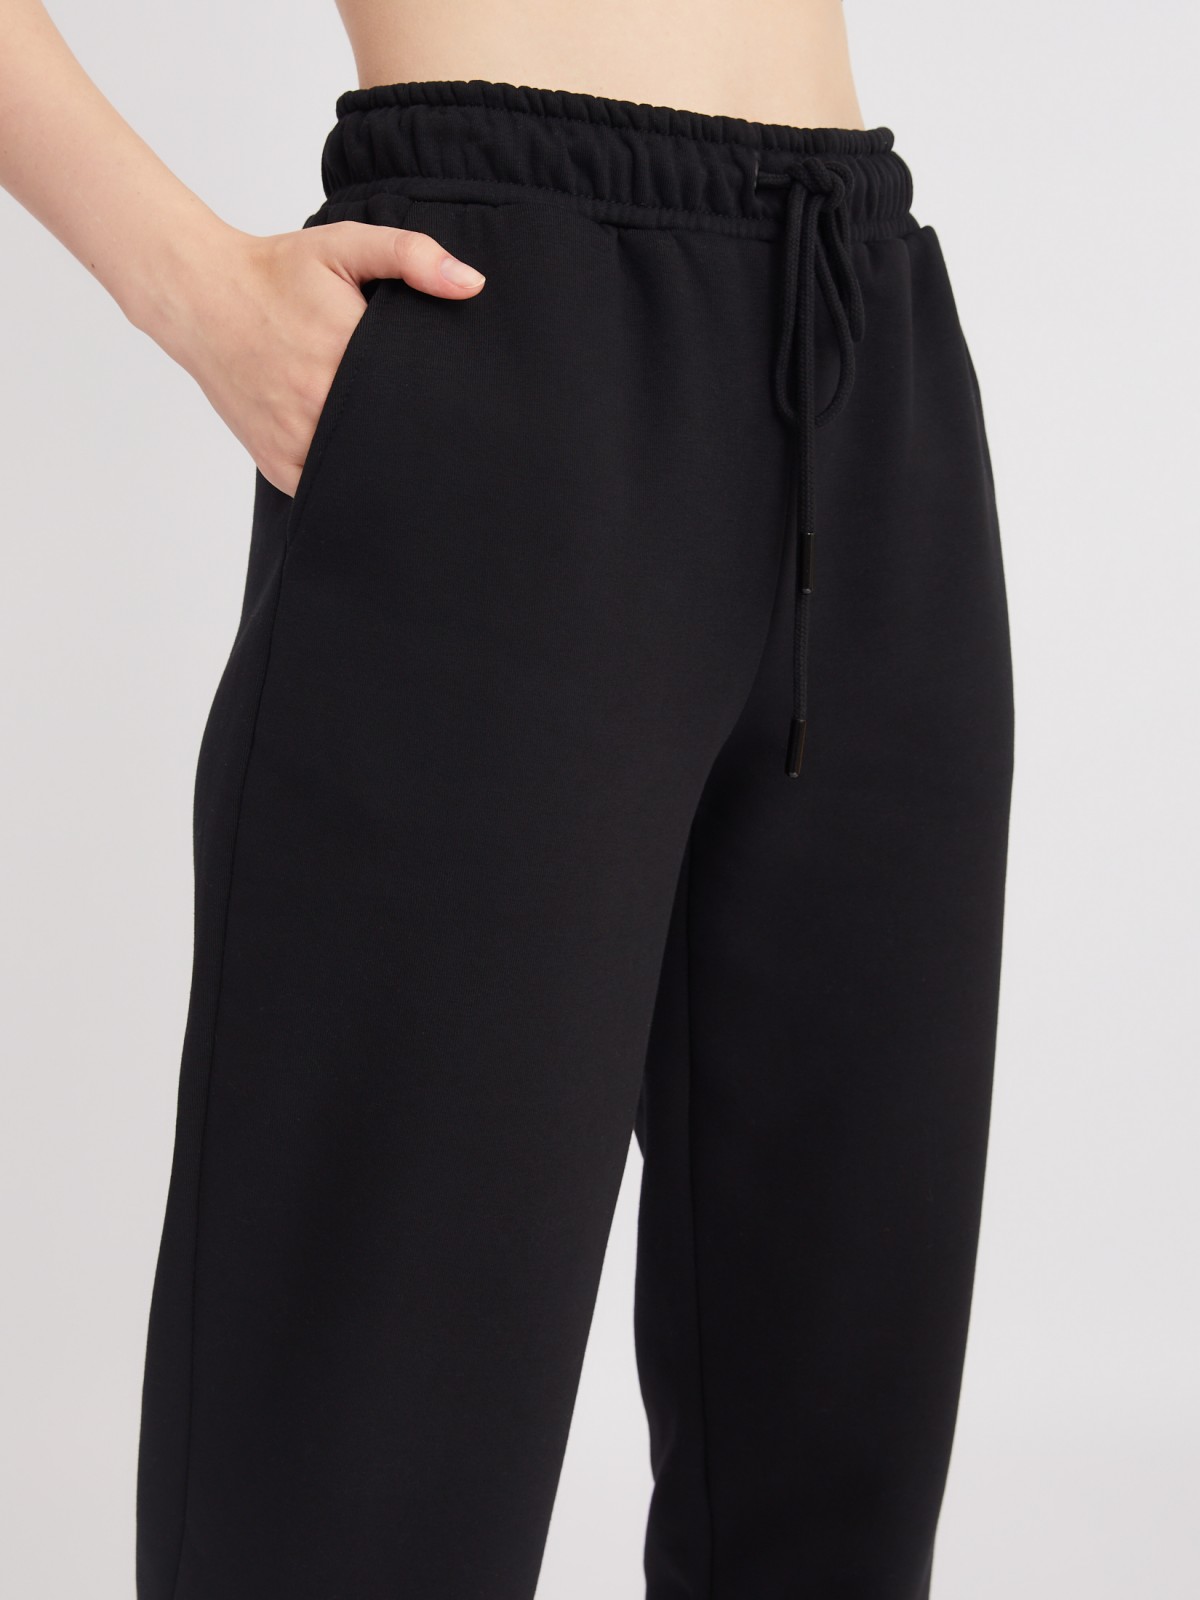 Утеплённые трикотажные брюки-джоггеры с поясом на резинке zolla 22332761Y062, цвет черный, размер XS - фото 5